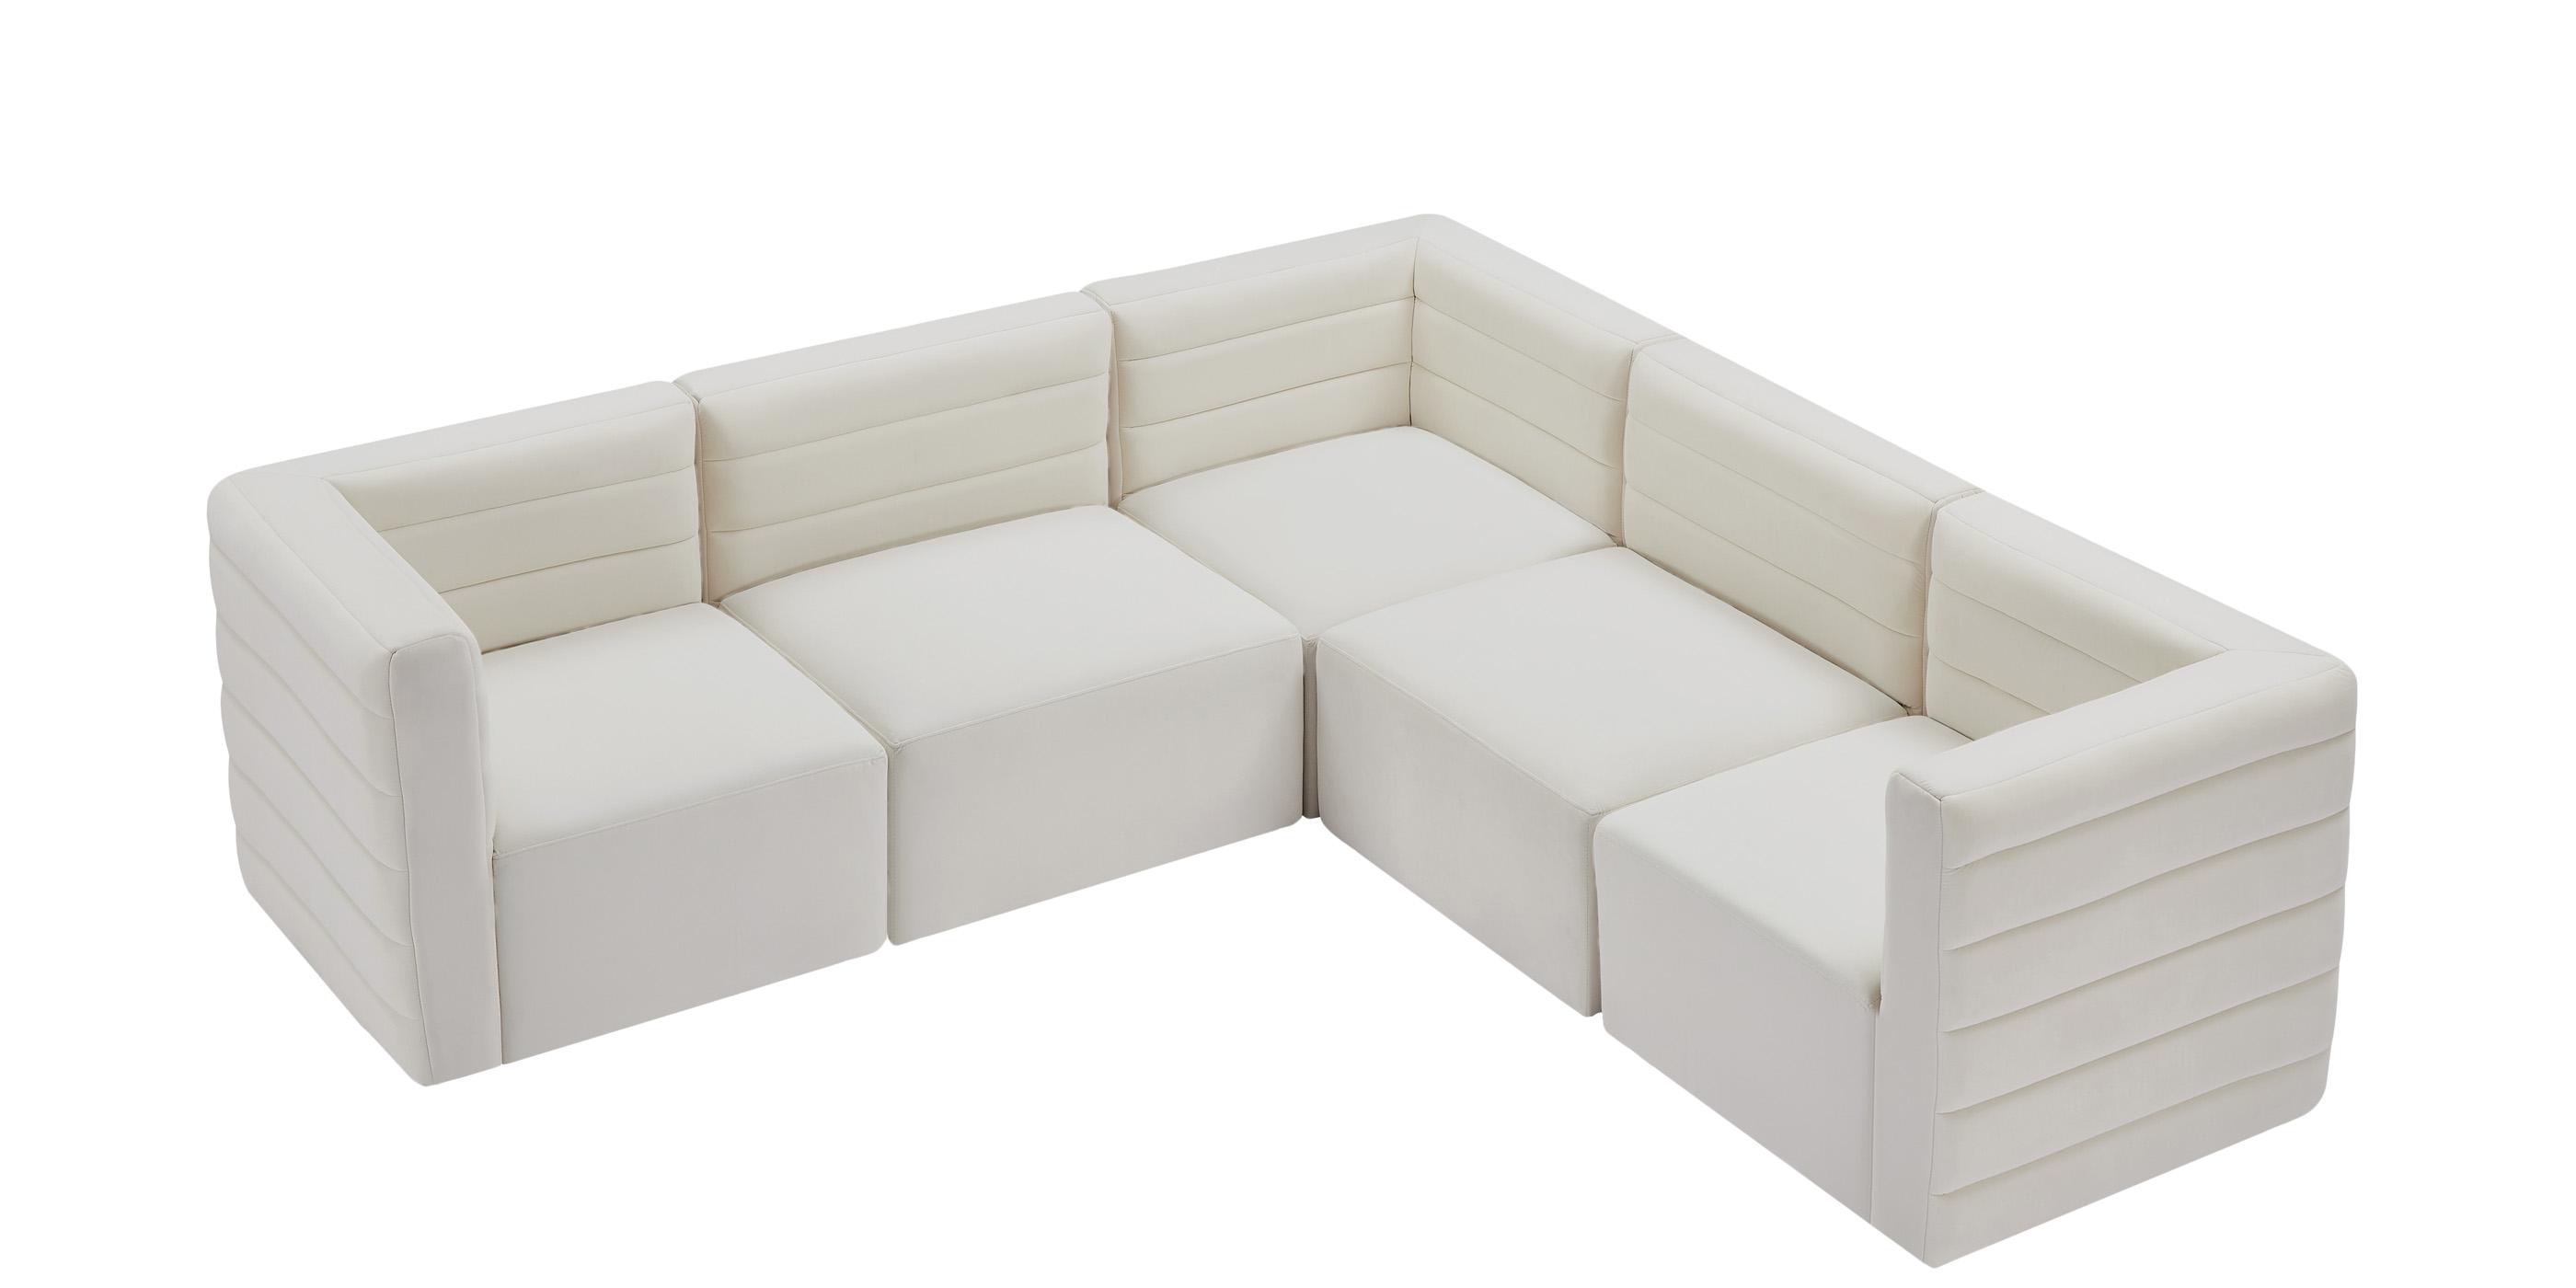 

    
Meridian Furniture Quincy 677Cream-Sec5C Modular Sectional Sofa Cream 677Cream-Sec5C
